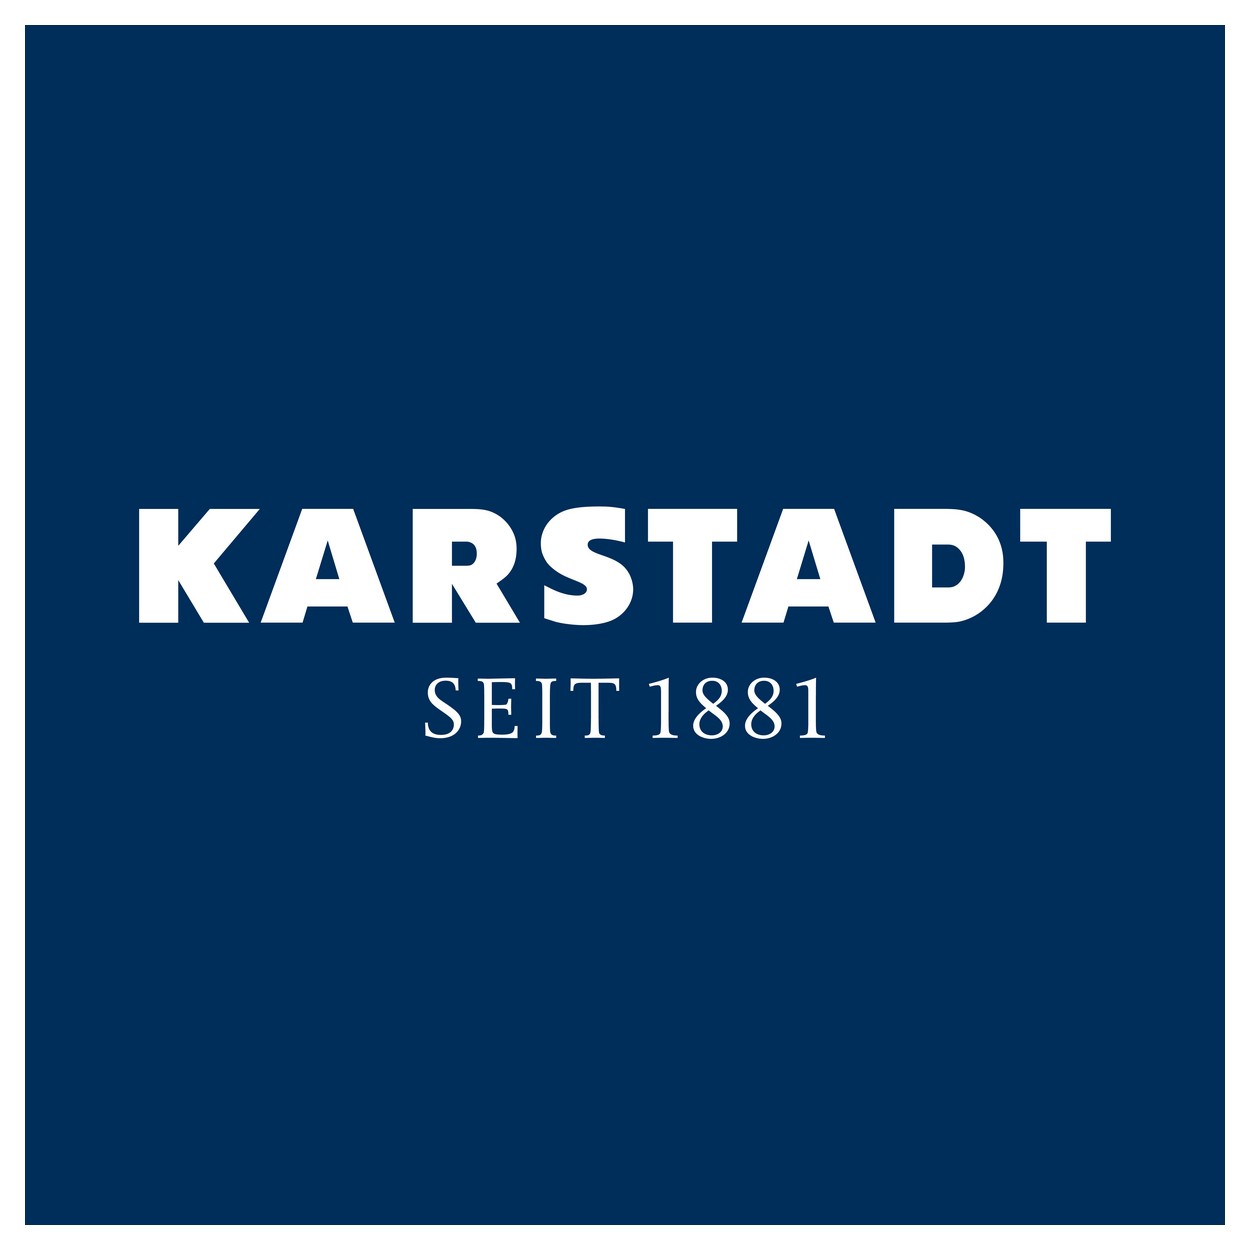 Karstadt Logo png